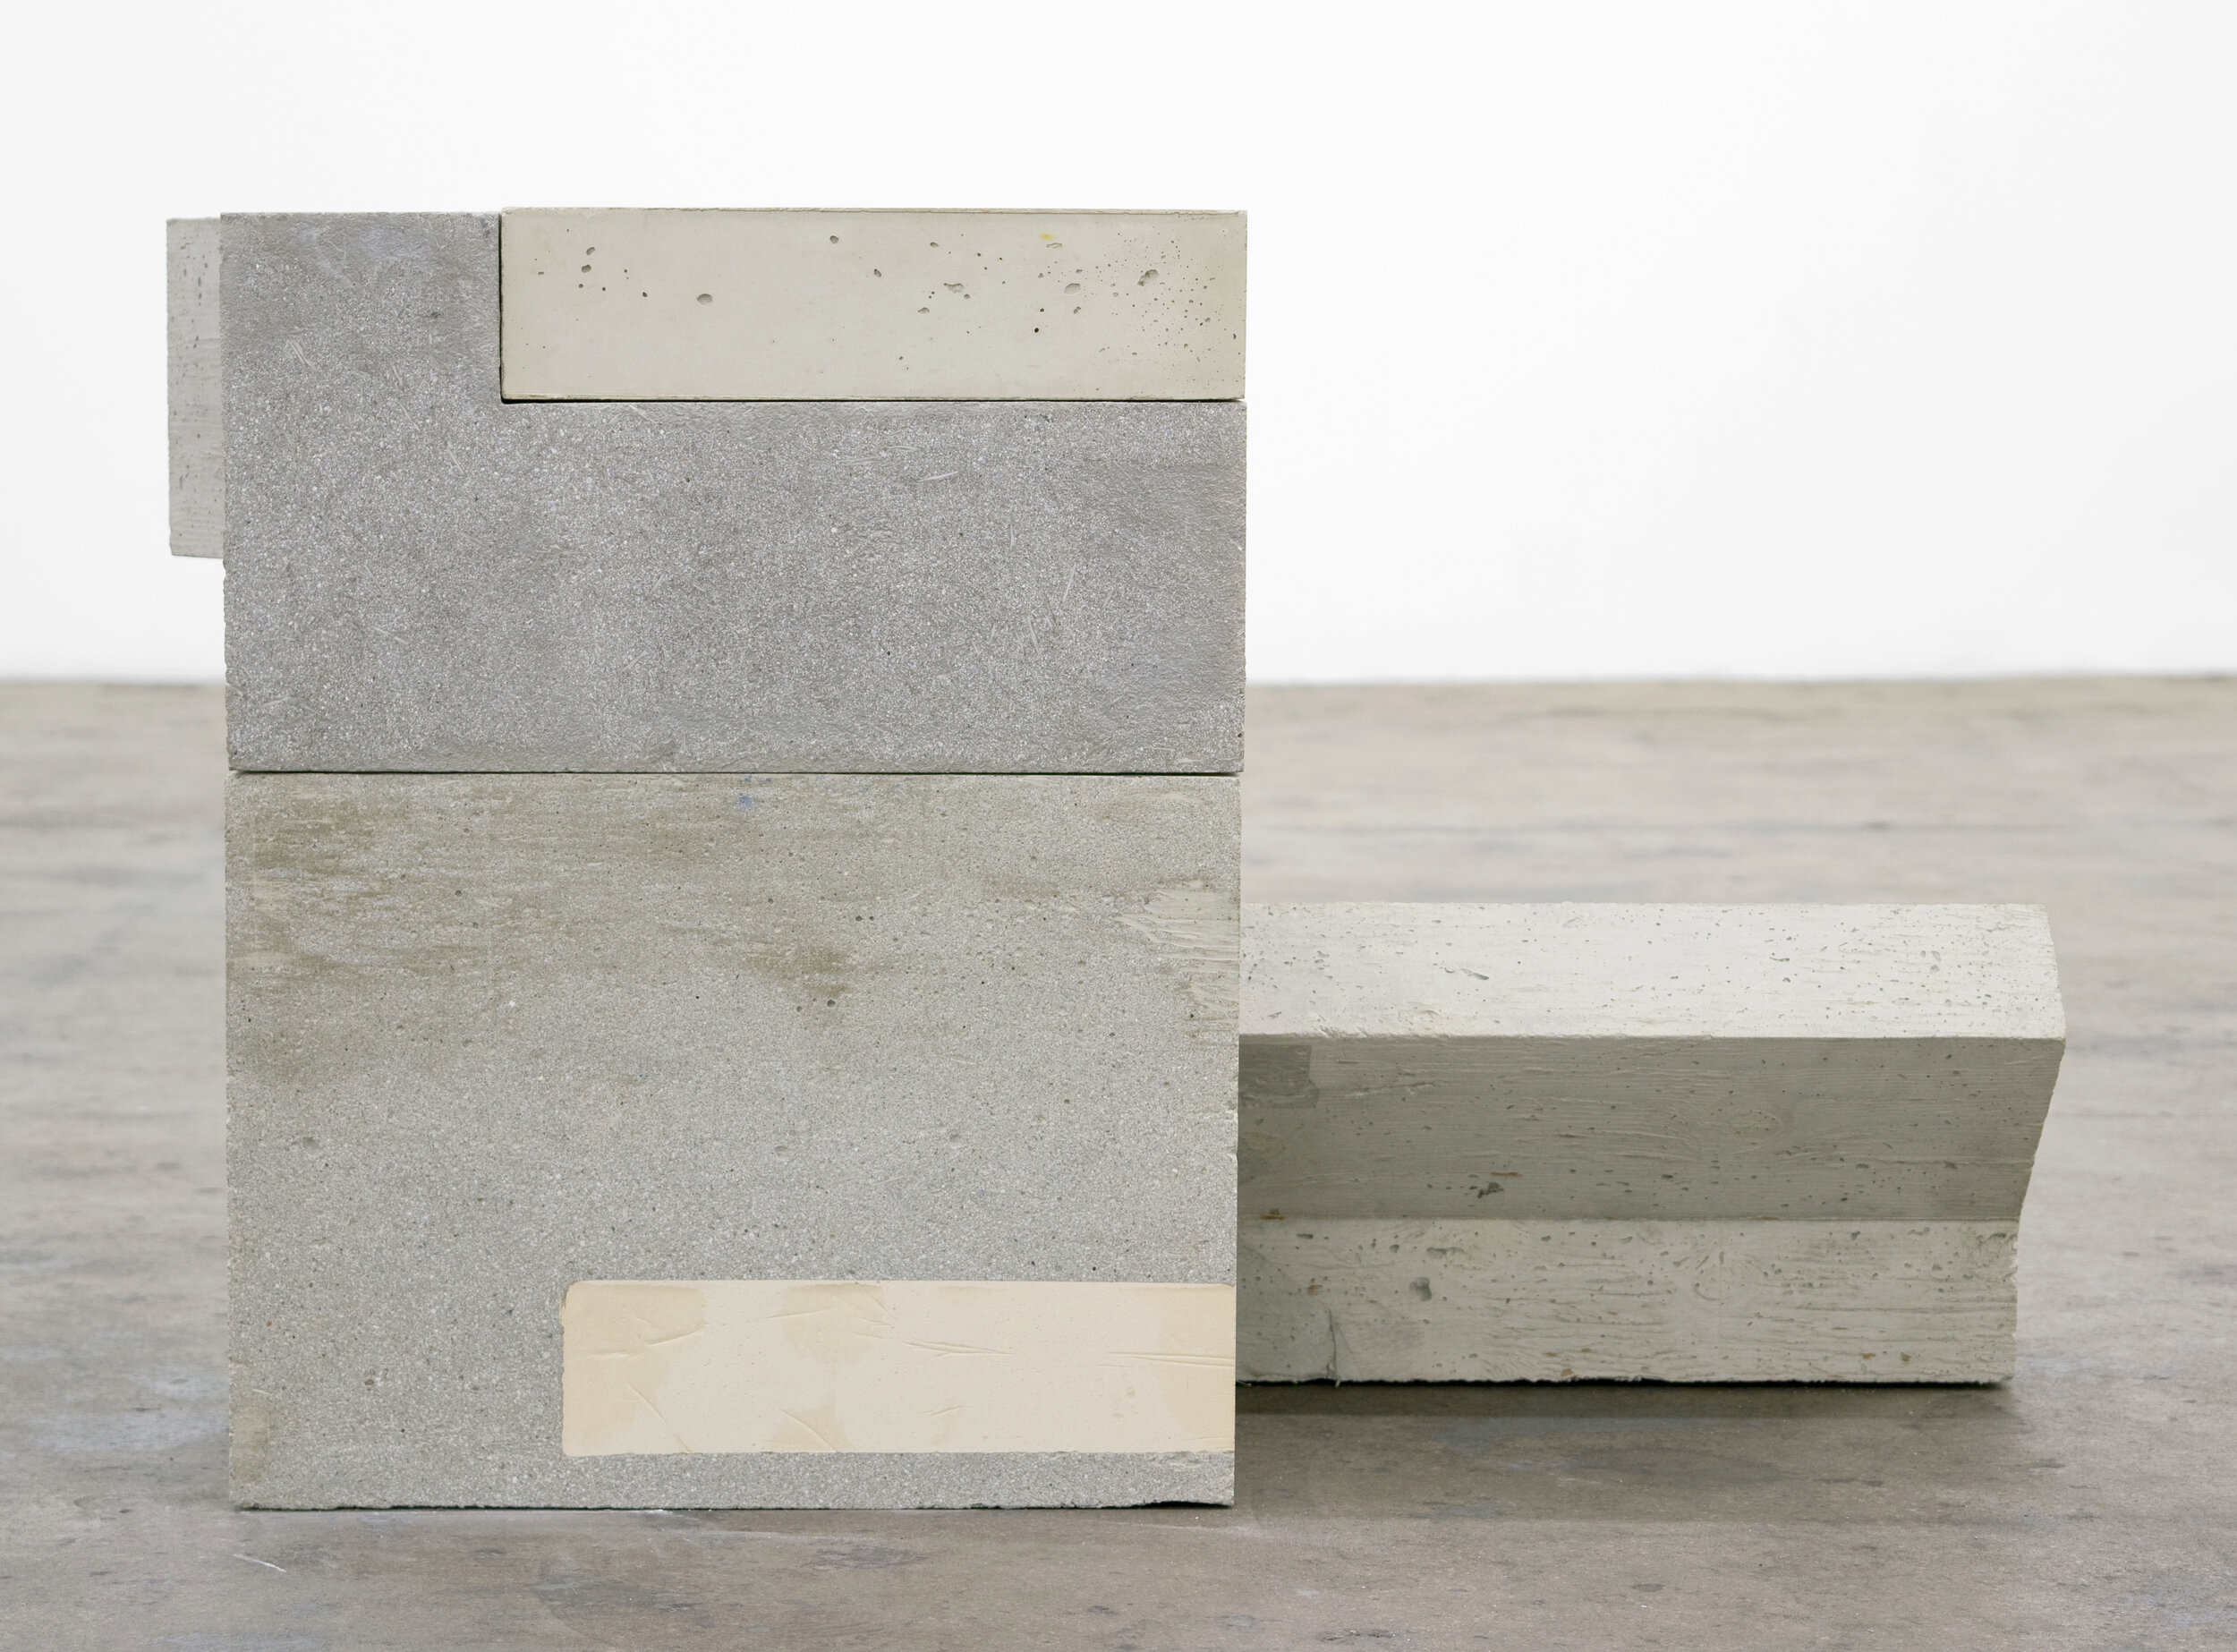  Jen Aitken  Villiphit , 2019 fiber-reinforced concrete, ceramic inlay, polystyrene foam, stainless steel hardware 21 x 34 x 22 in (53.3 x 86.4 x 55.9 cm) 